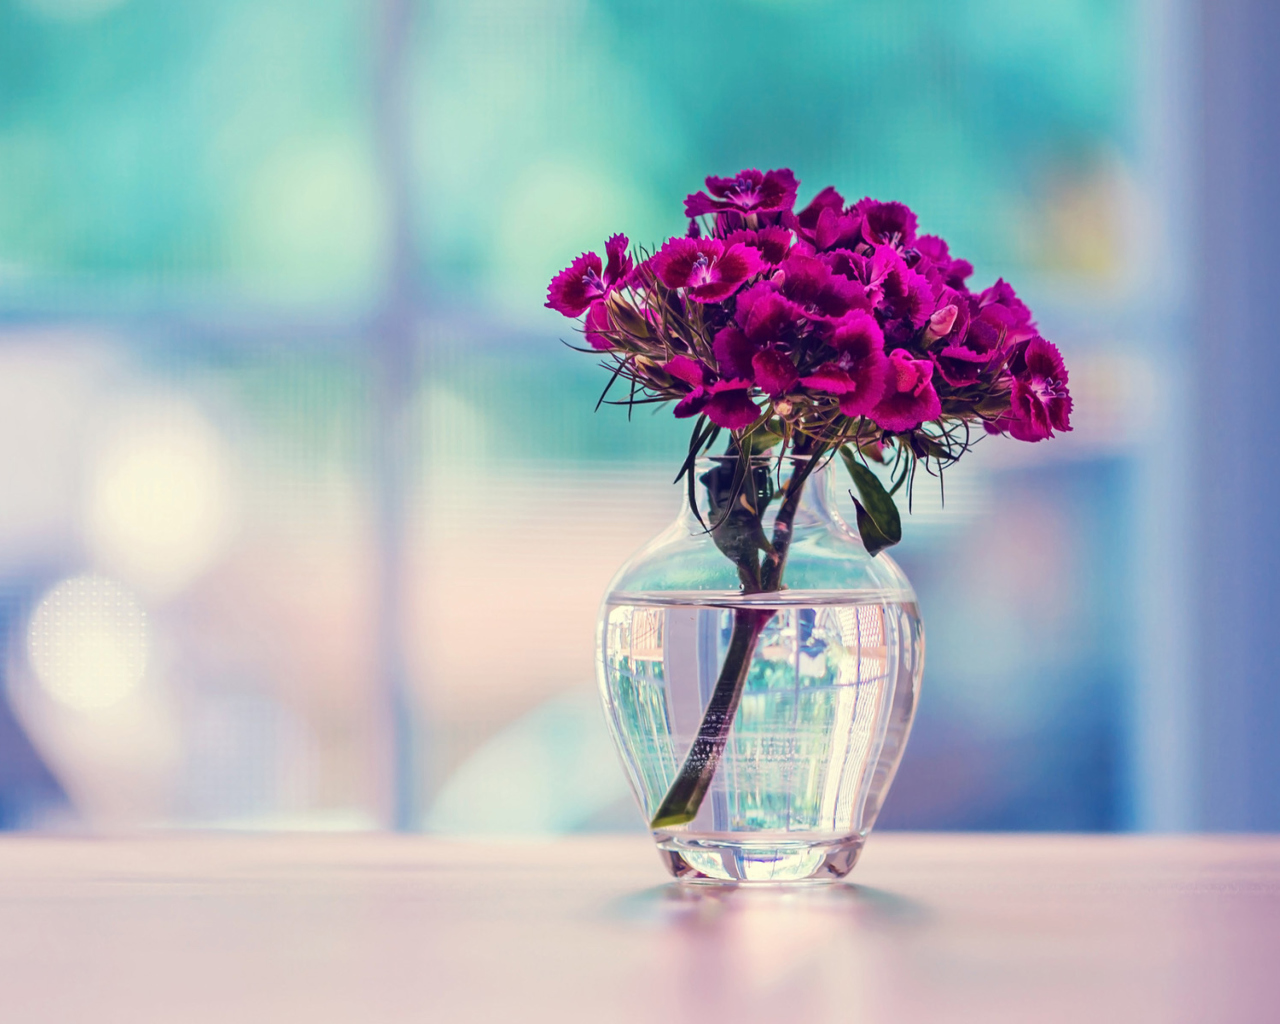 Обои Flowers In Vase 1280x1024